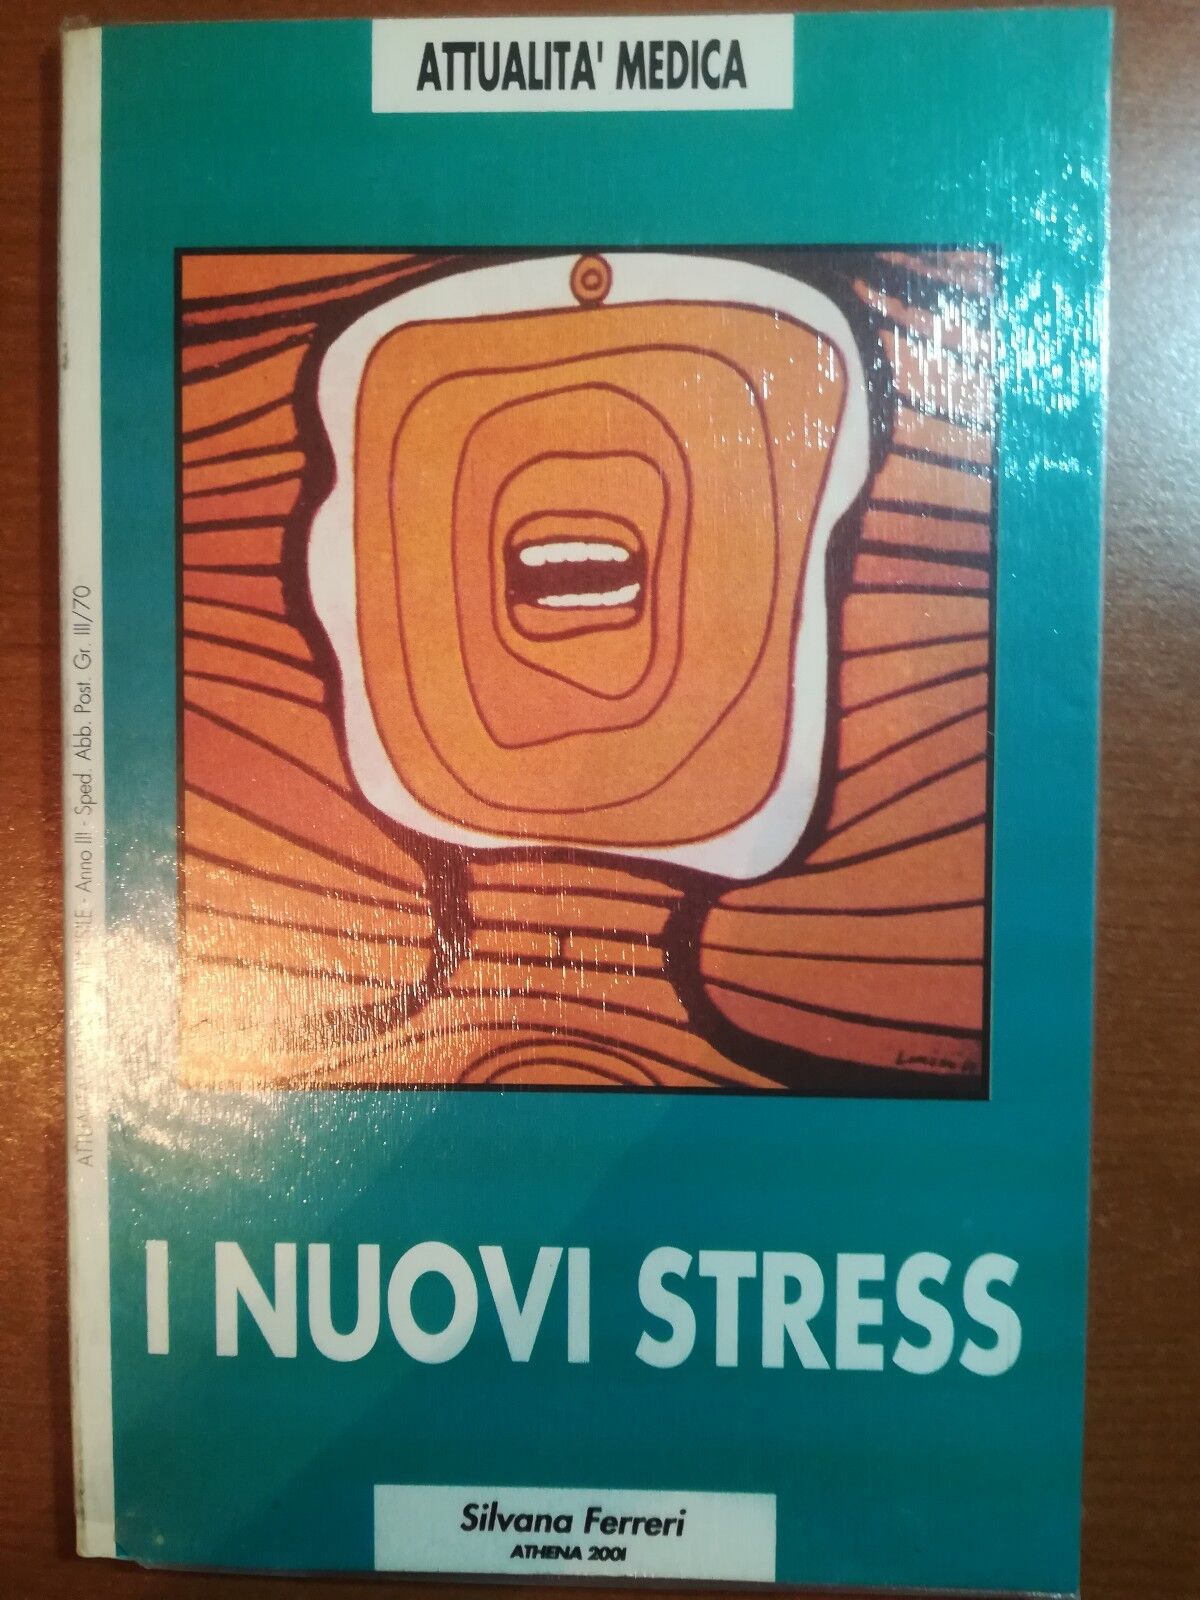 I nuovi stress - Silvana Ferreri - Athena 2001 - 1988 - M